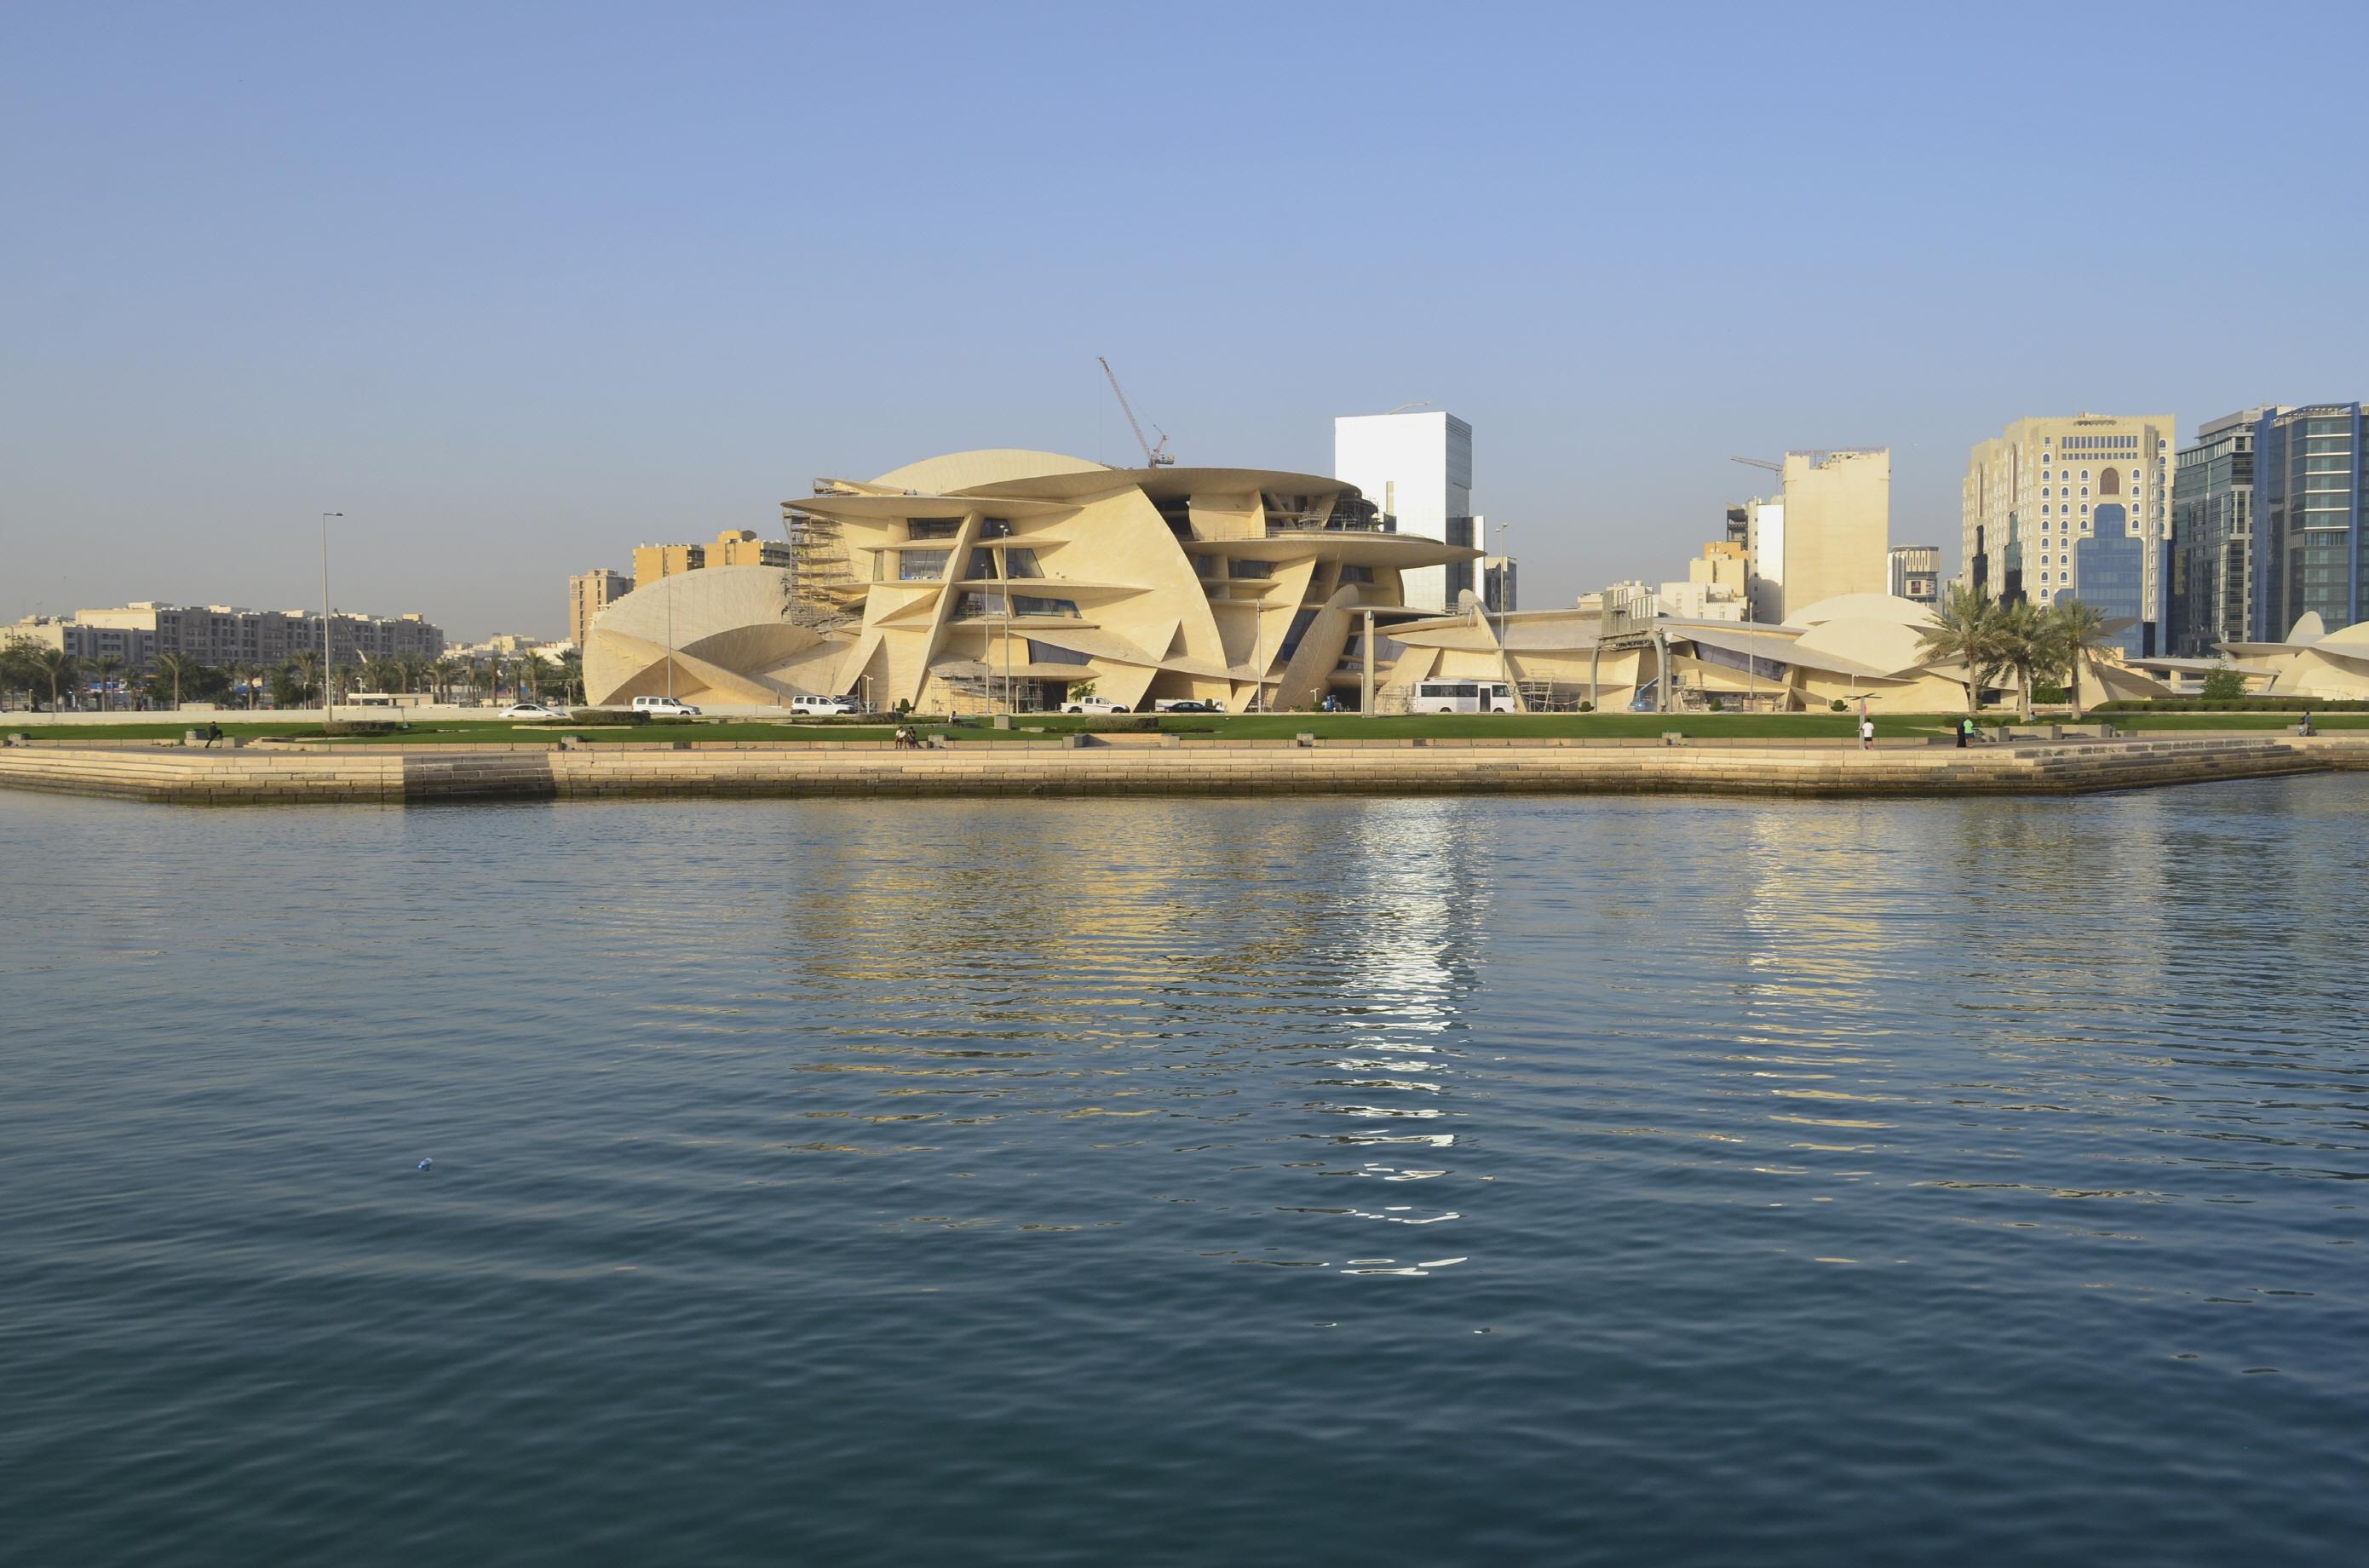 카타르 국립박물관  National Museum of Qatar